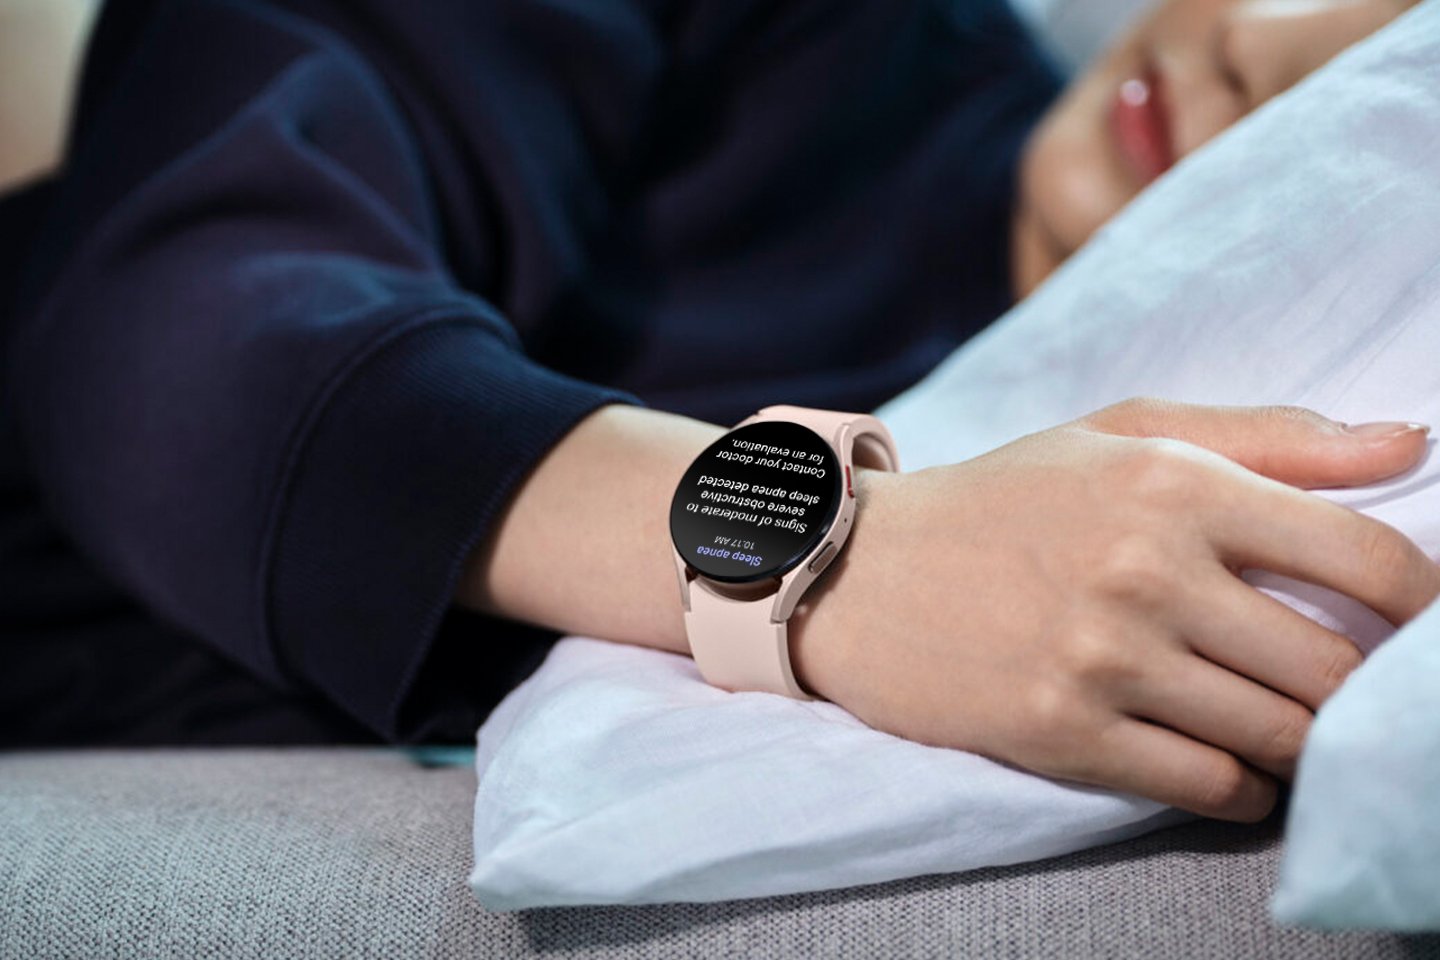 Samsung slog Apple i kampen om FDA-godkännande för sömnapnéfunktion i Galaxy Watch